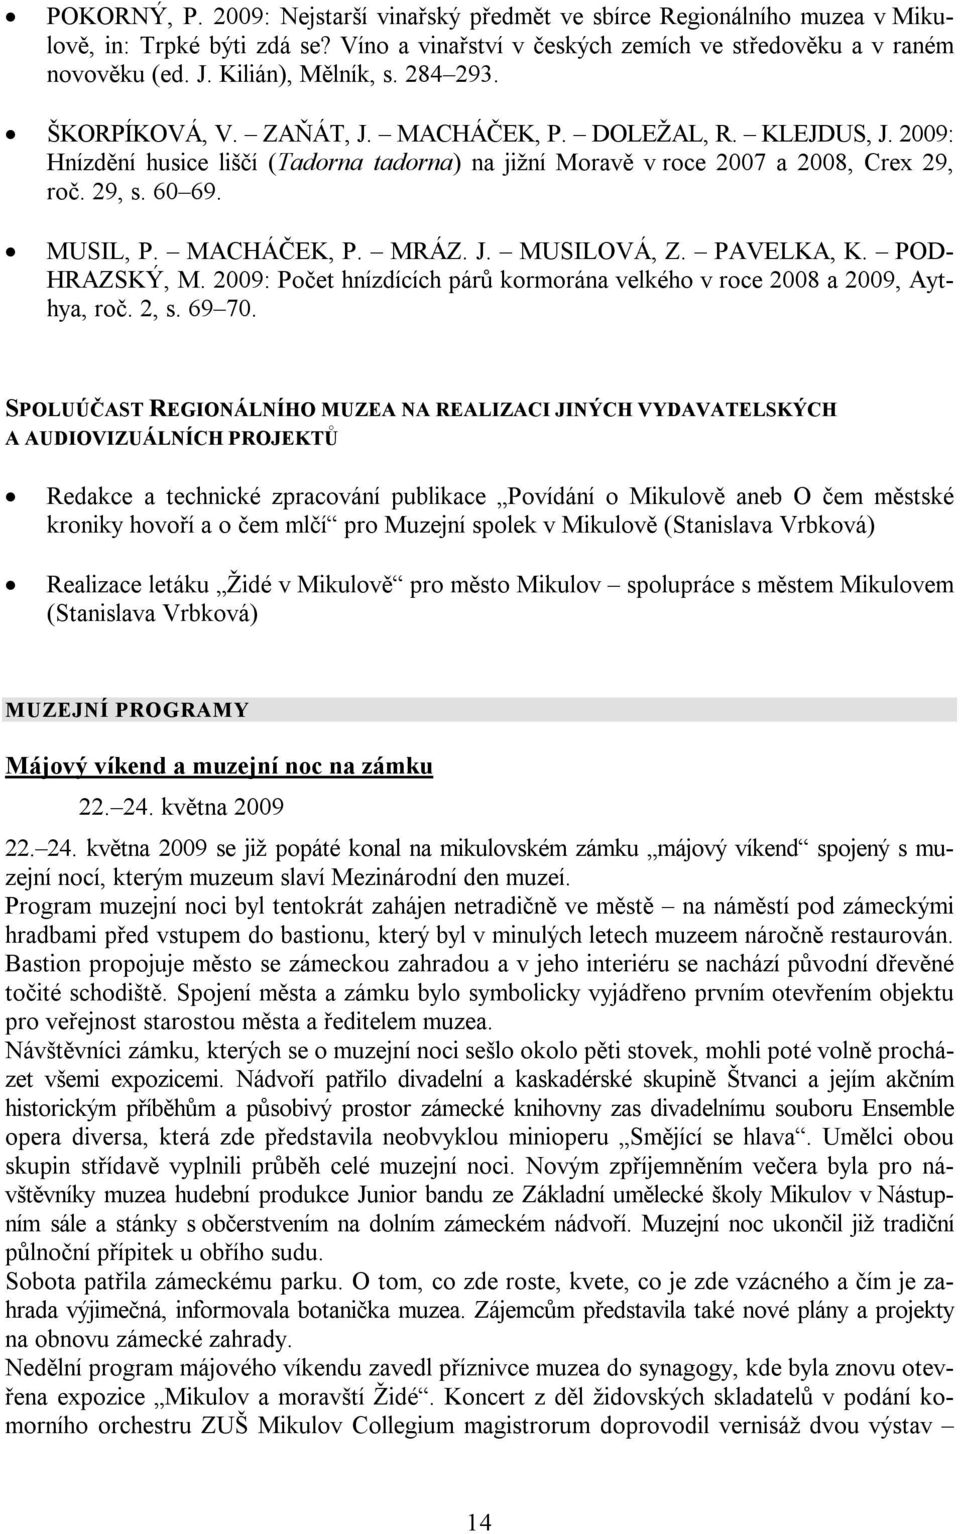 MUSIL, P. MACHÁČEK, P. MRÁZ. J. MUSILOVÁ, Z. PAVELKA, K. POD- HRAZSKÝ, M. 2009: Počet hnízdících párů kormorána velkého v roce 2008 a 2009, Aythya, roč. 2, s. 69 70.